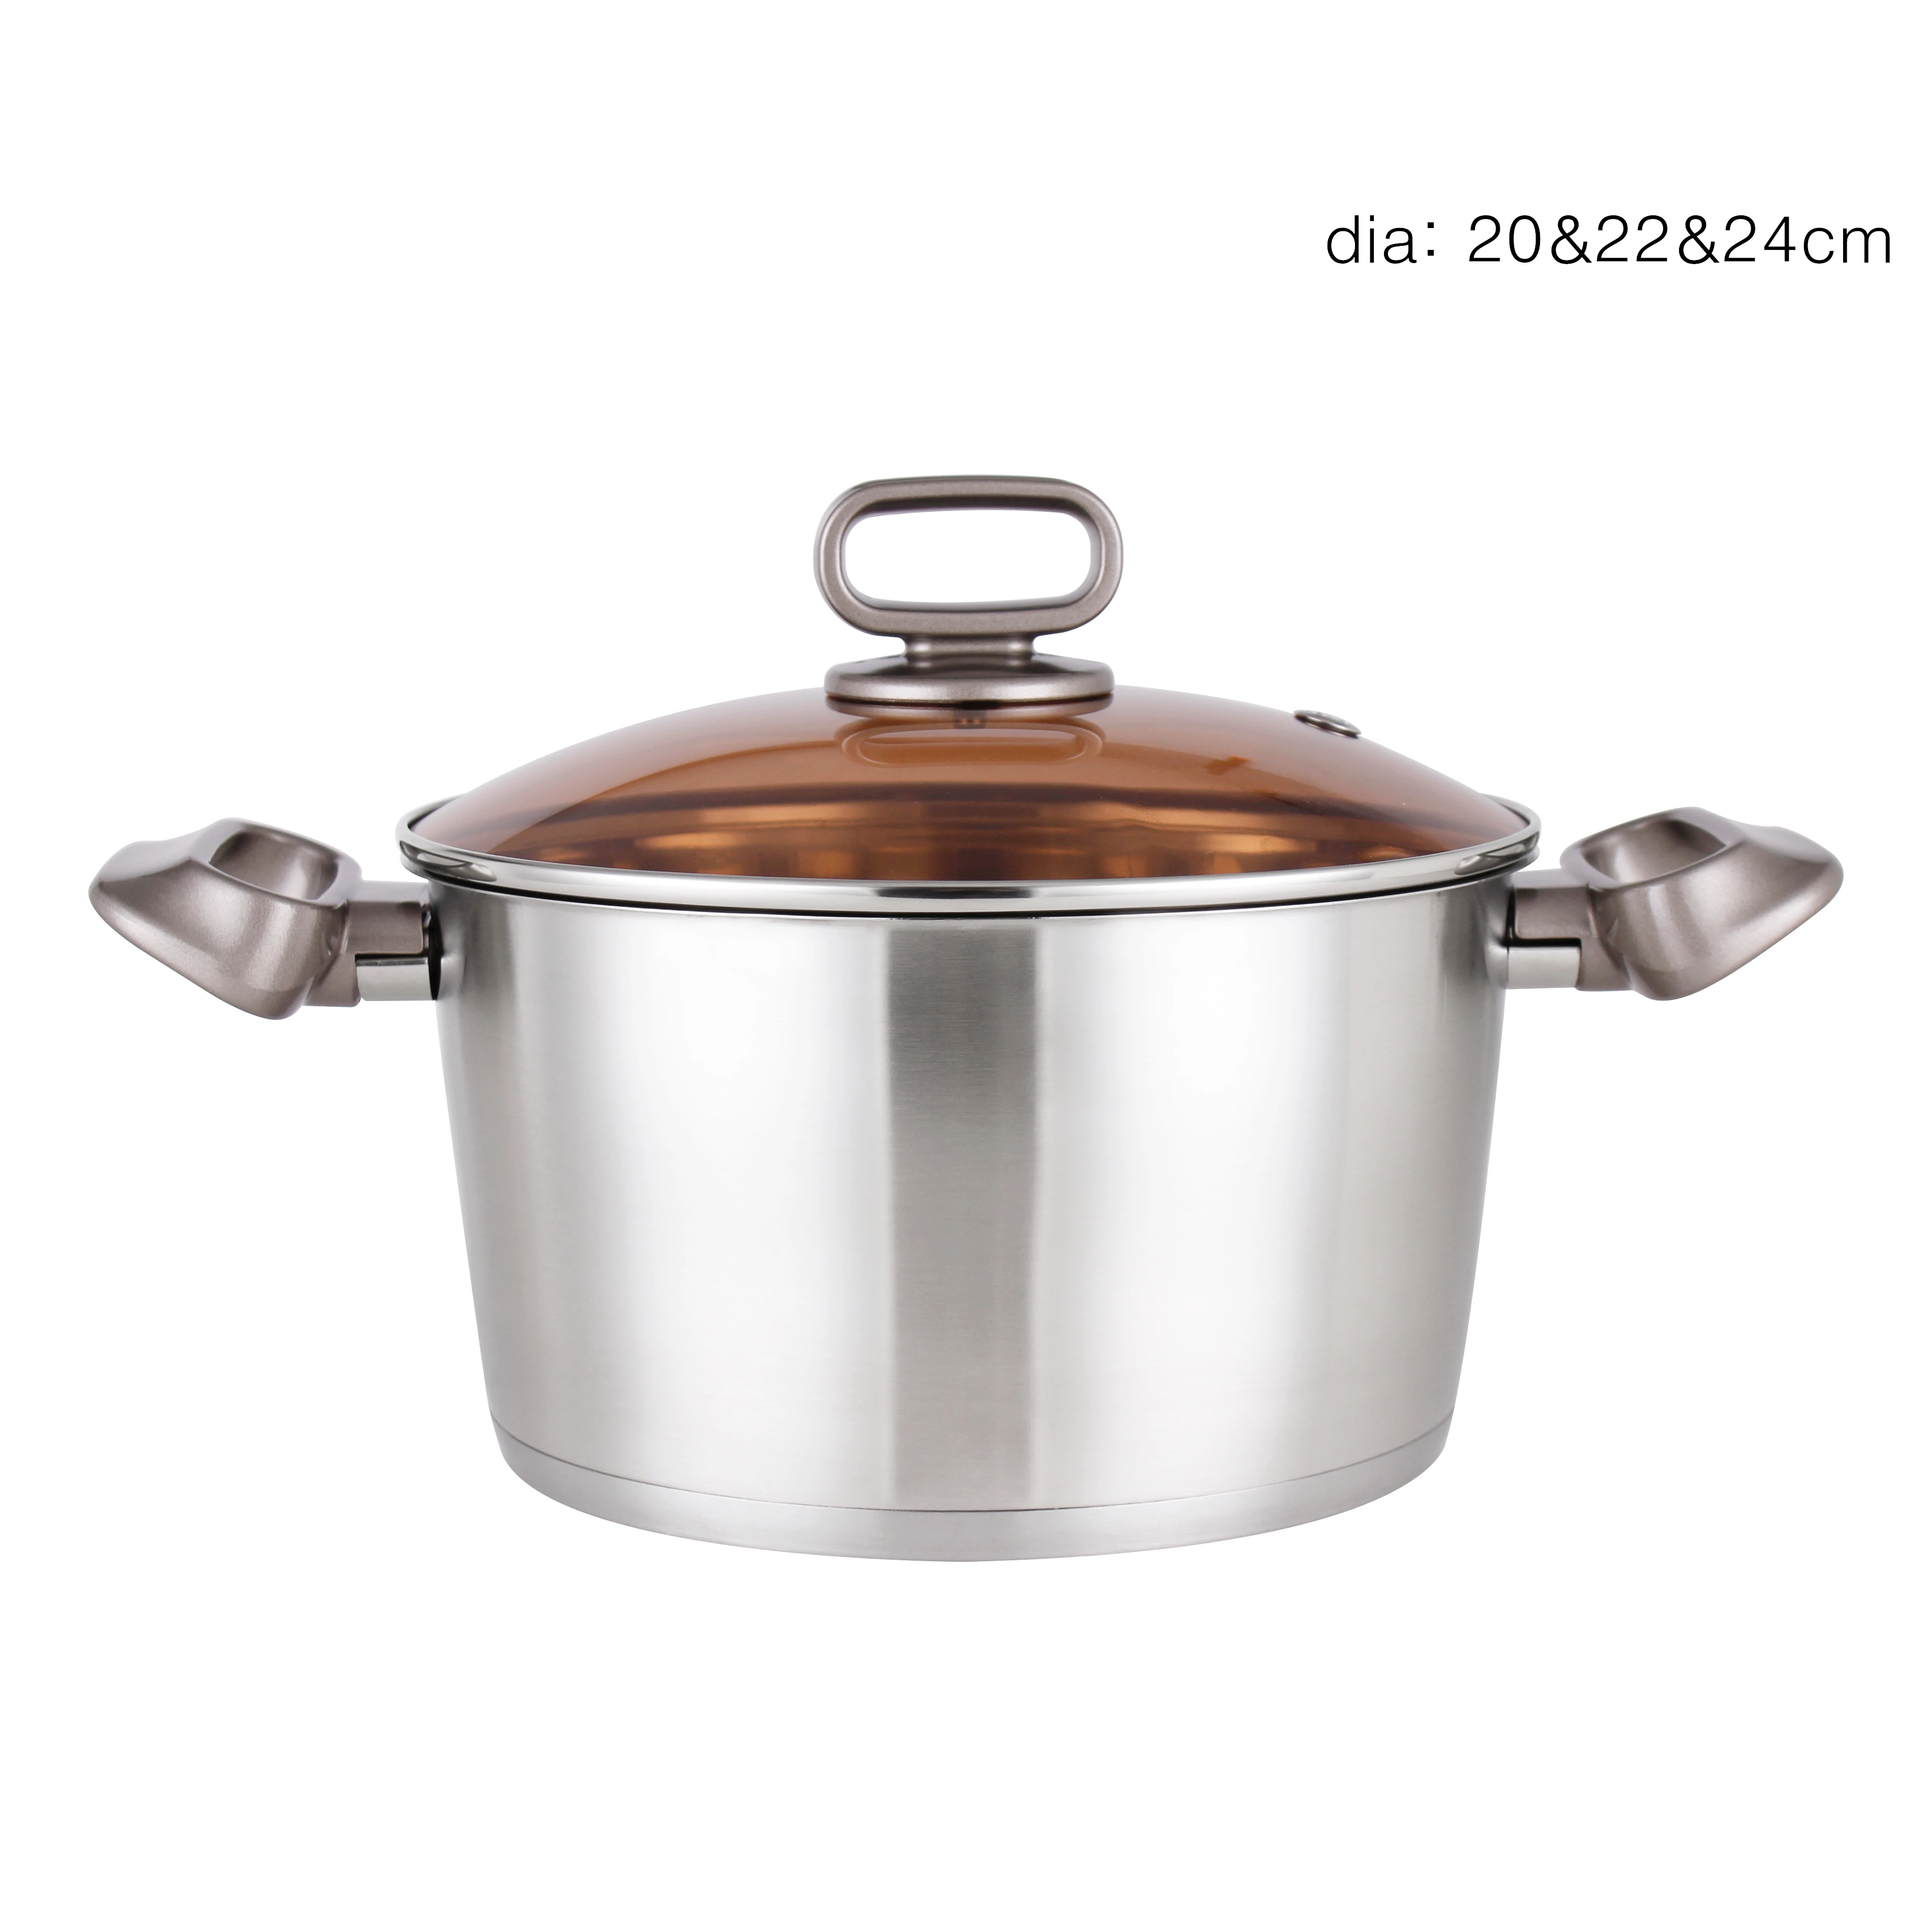 10pcs Pot Pan Stainless Steel Cooking Pot Cookware Set